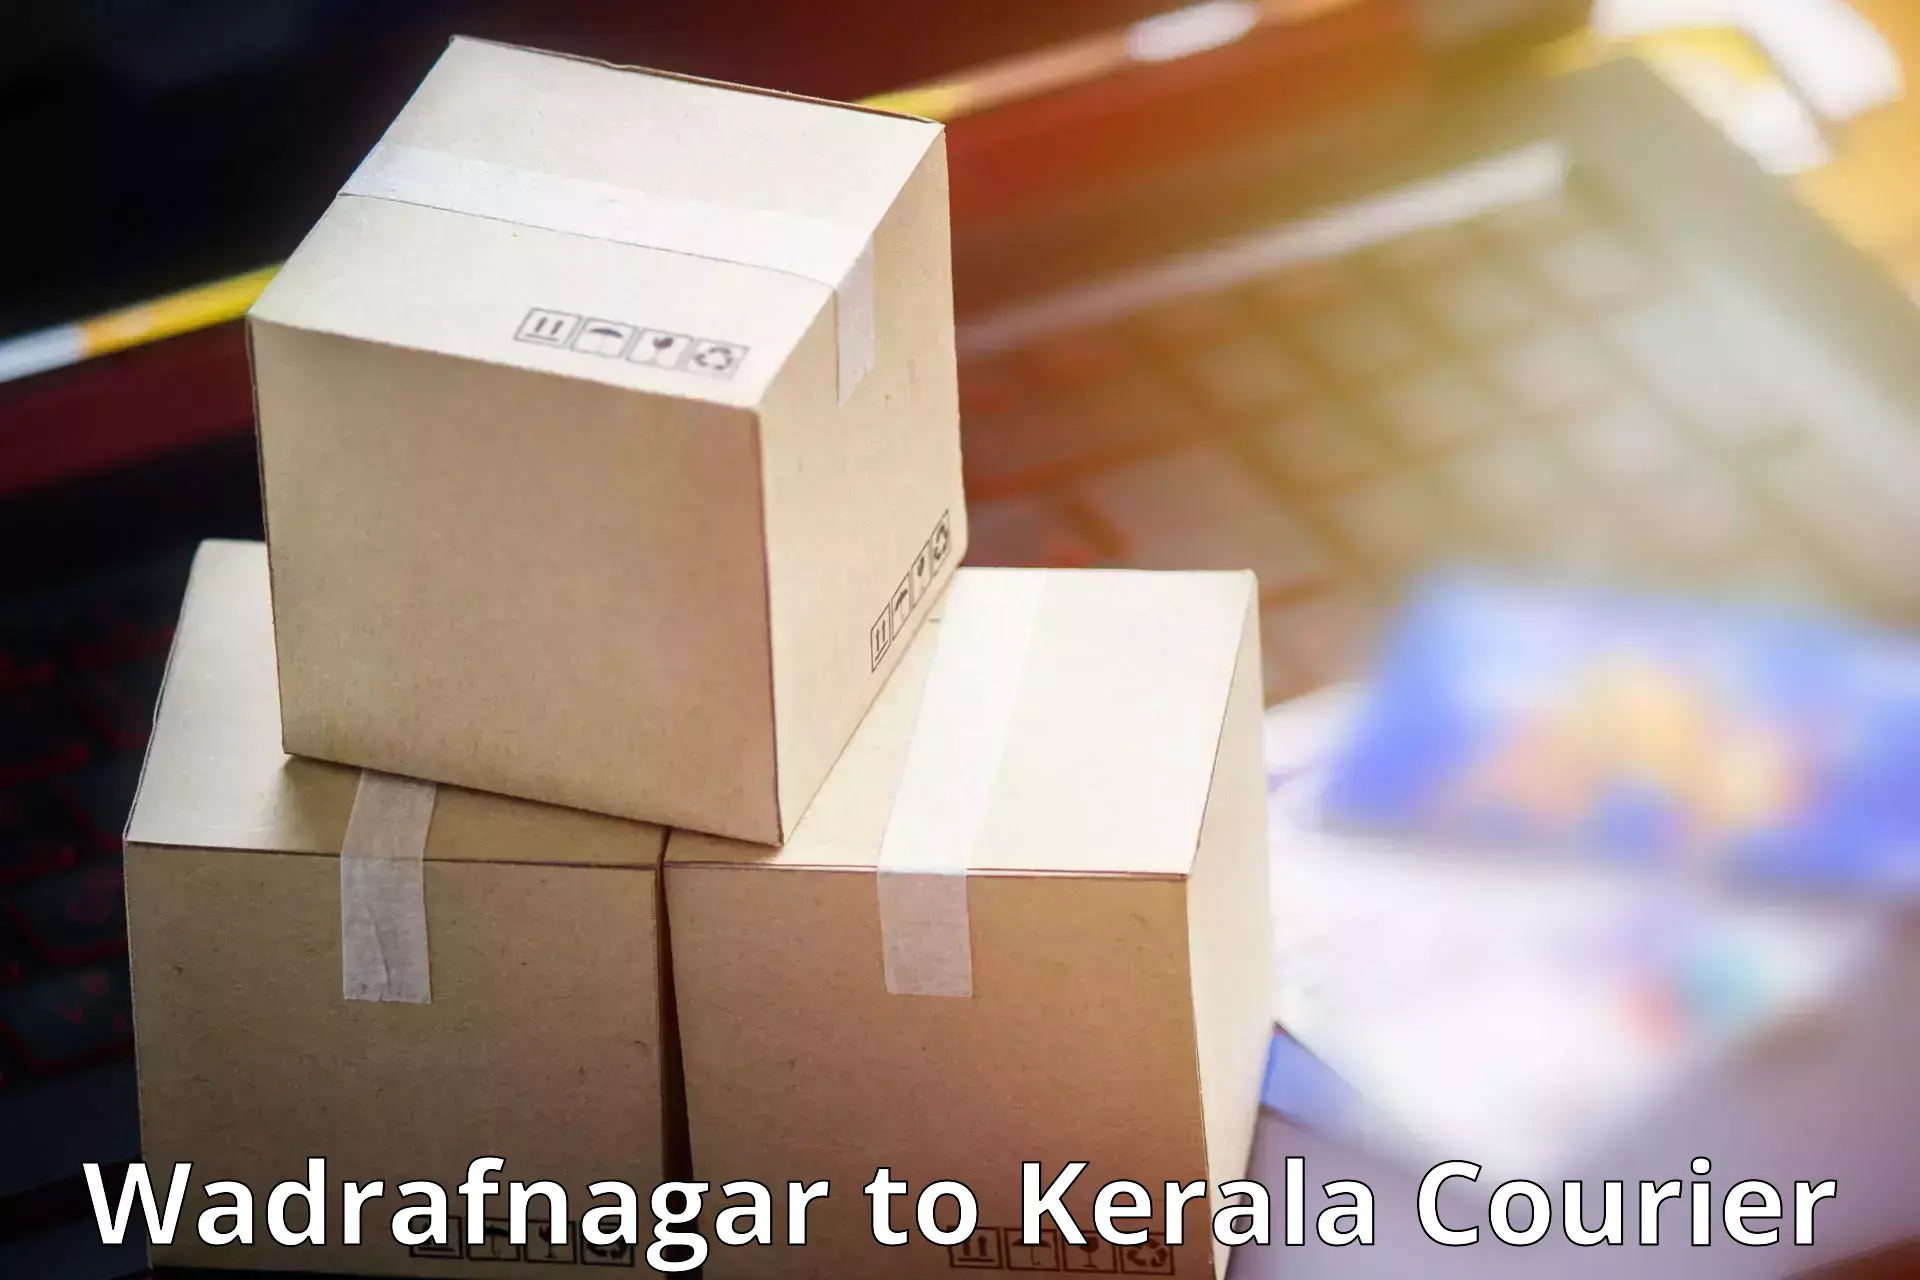 Budget-friendly shipping Wadrafnagar to Cochin Port Kochi